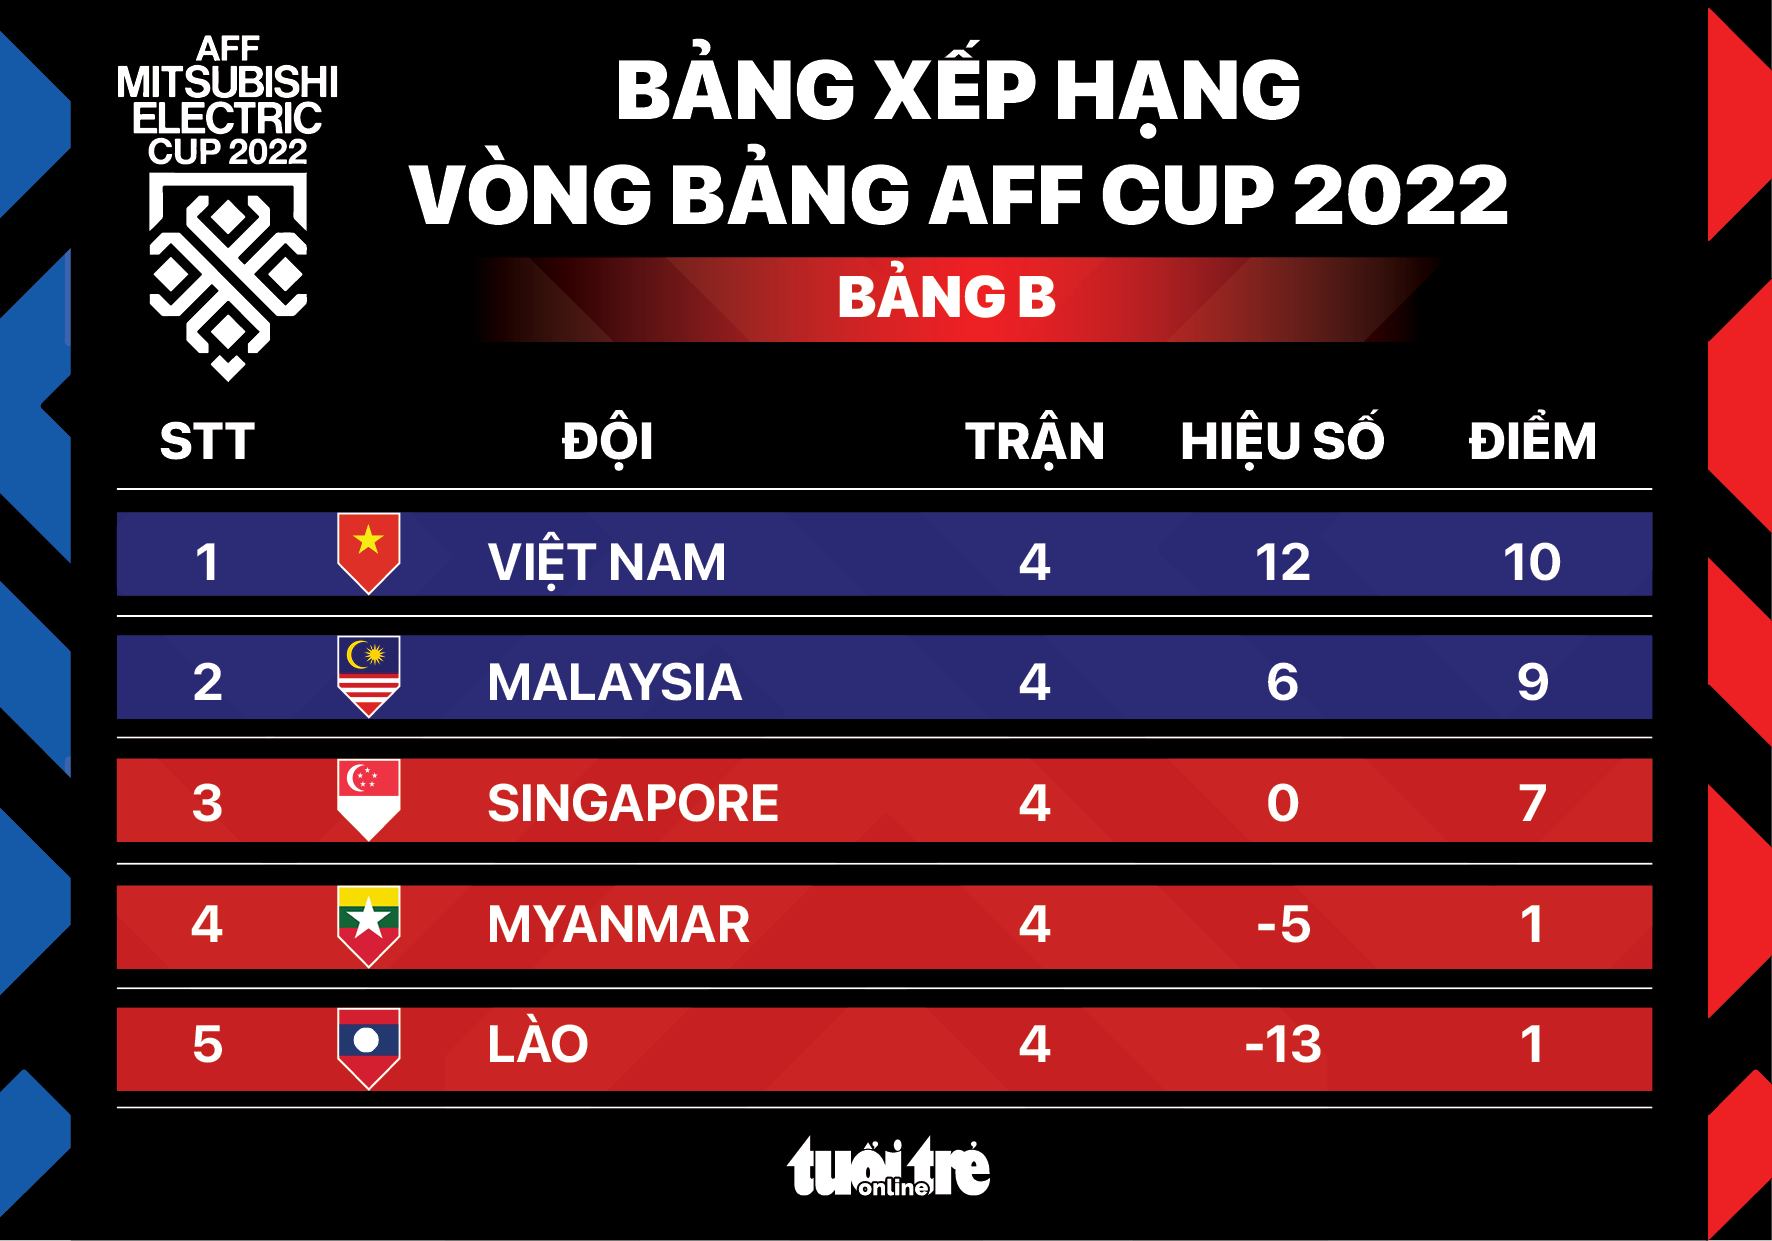 Xếp hạng bảng B AFF Cup 2022: Việt Nam vượt trội, Malaysia hạng nhì - Ảnh 1.